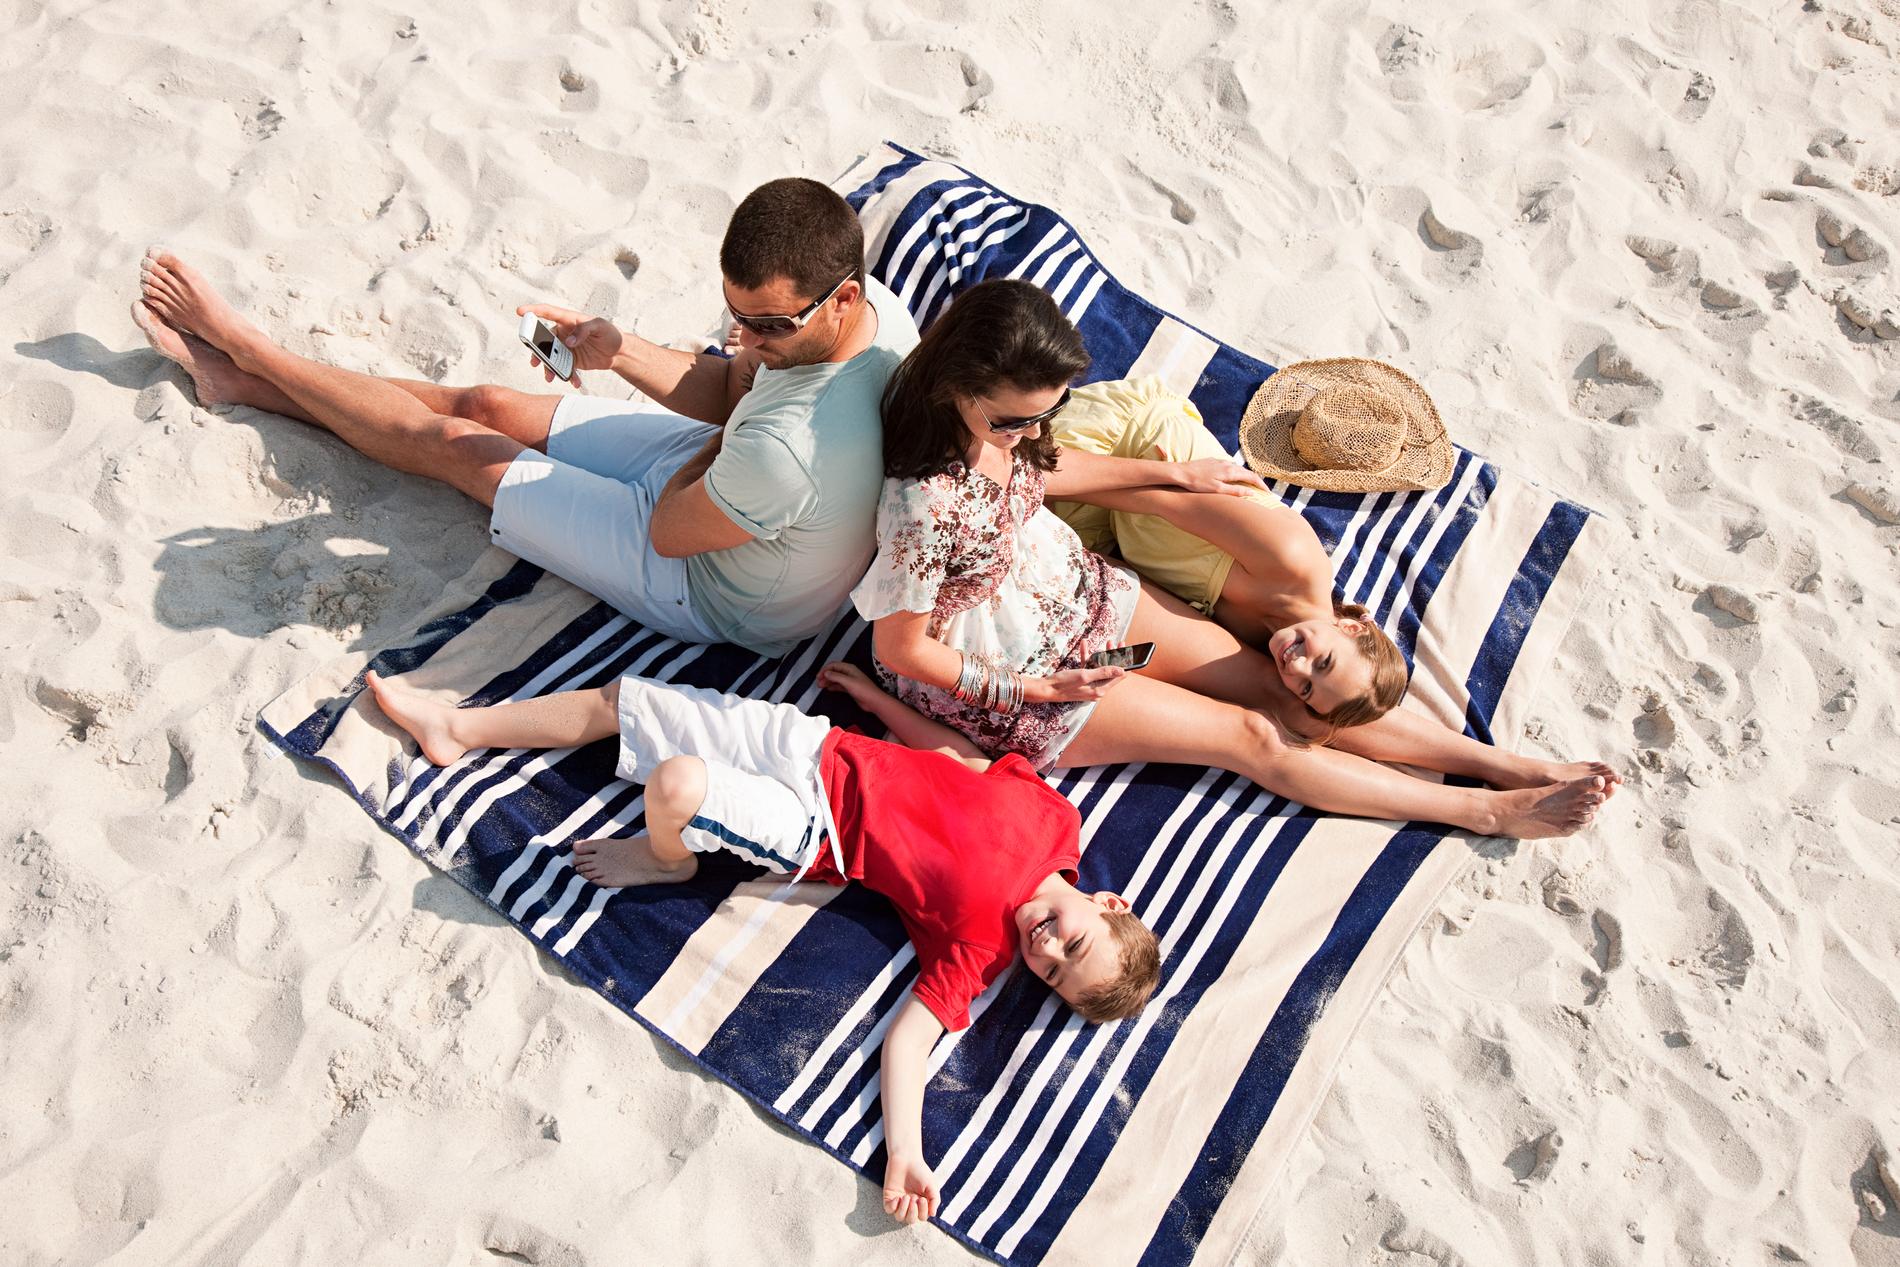 Att ha en mobilfri semester blir allt mer populärt. 